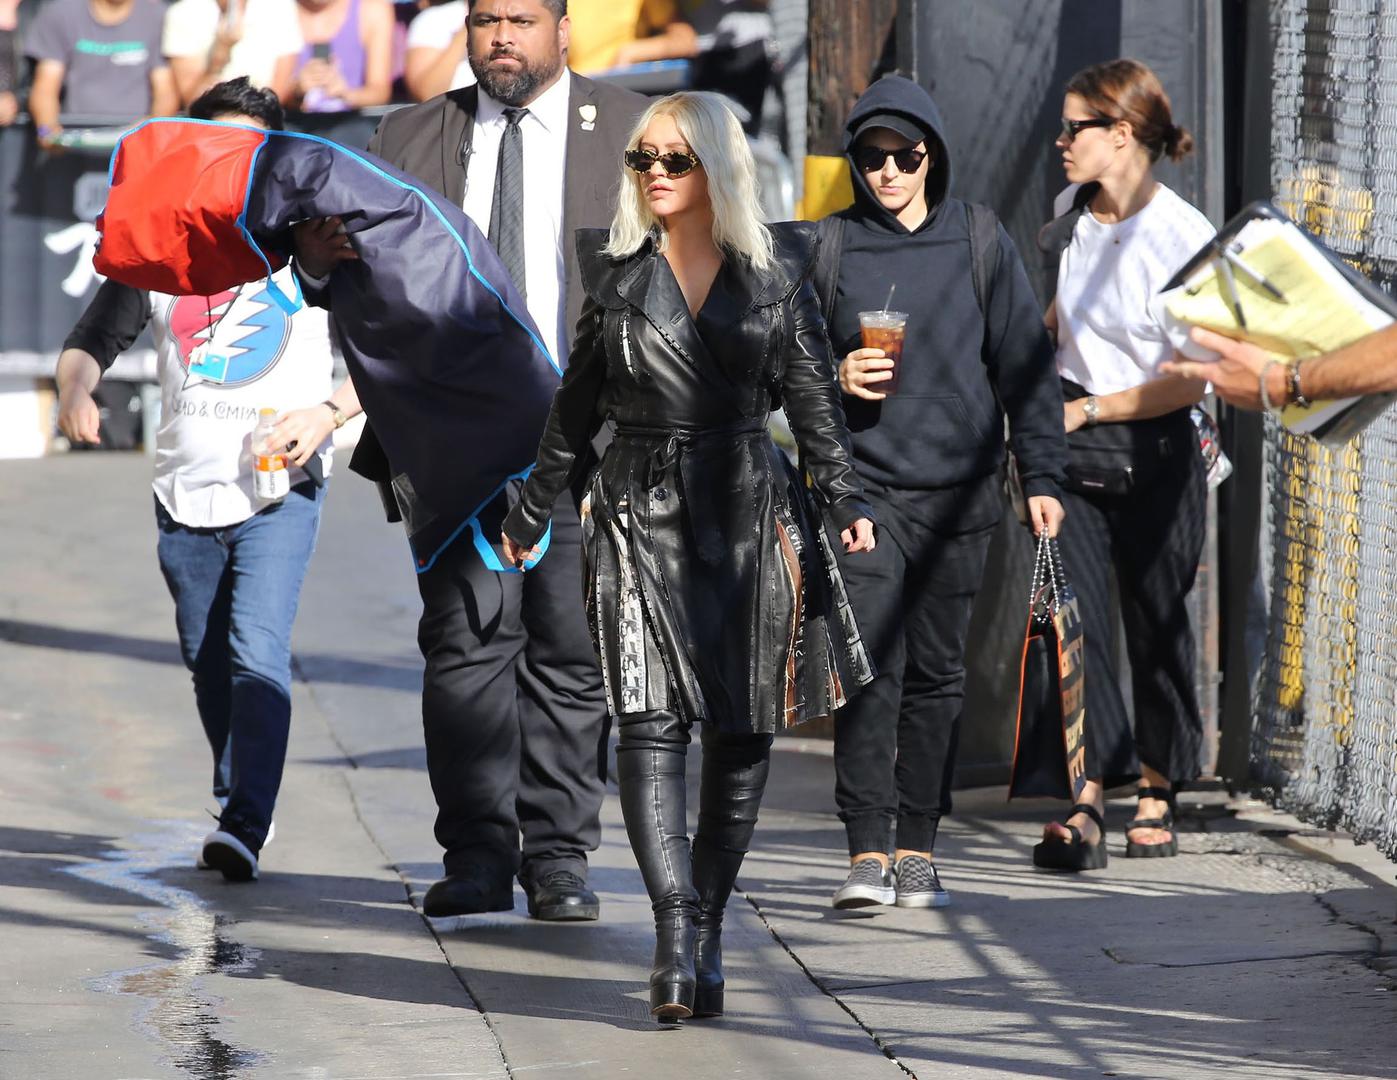 Cristina Aguilera gostovala je u talk showu Jimmyja Kimmela i pričala o karijeri, djeci i o tome kako društvene mreže utječu na nju i koliko ih koristi. Ipak, teme razgovora nisu privukle toliko pažnju medija koliko izgled pjevačice. 